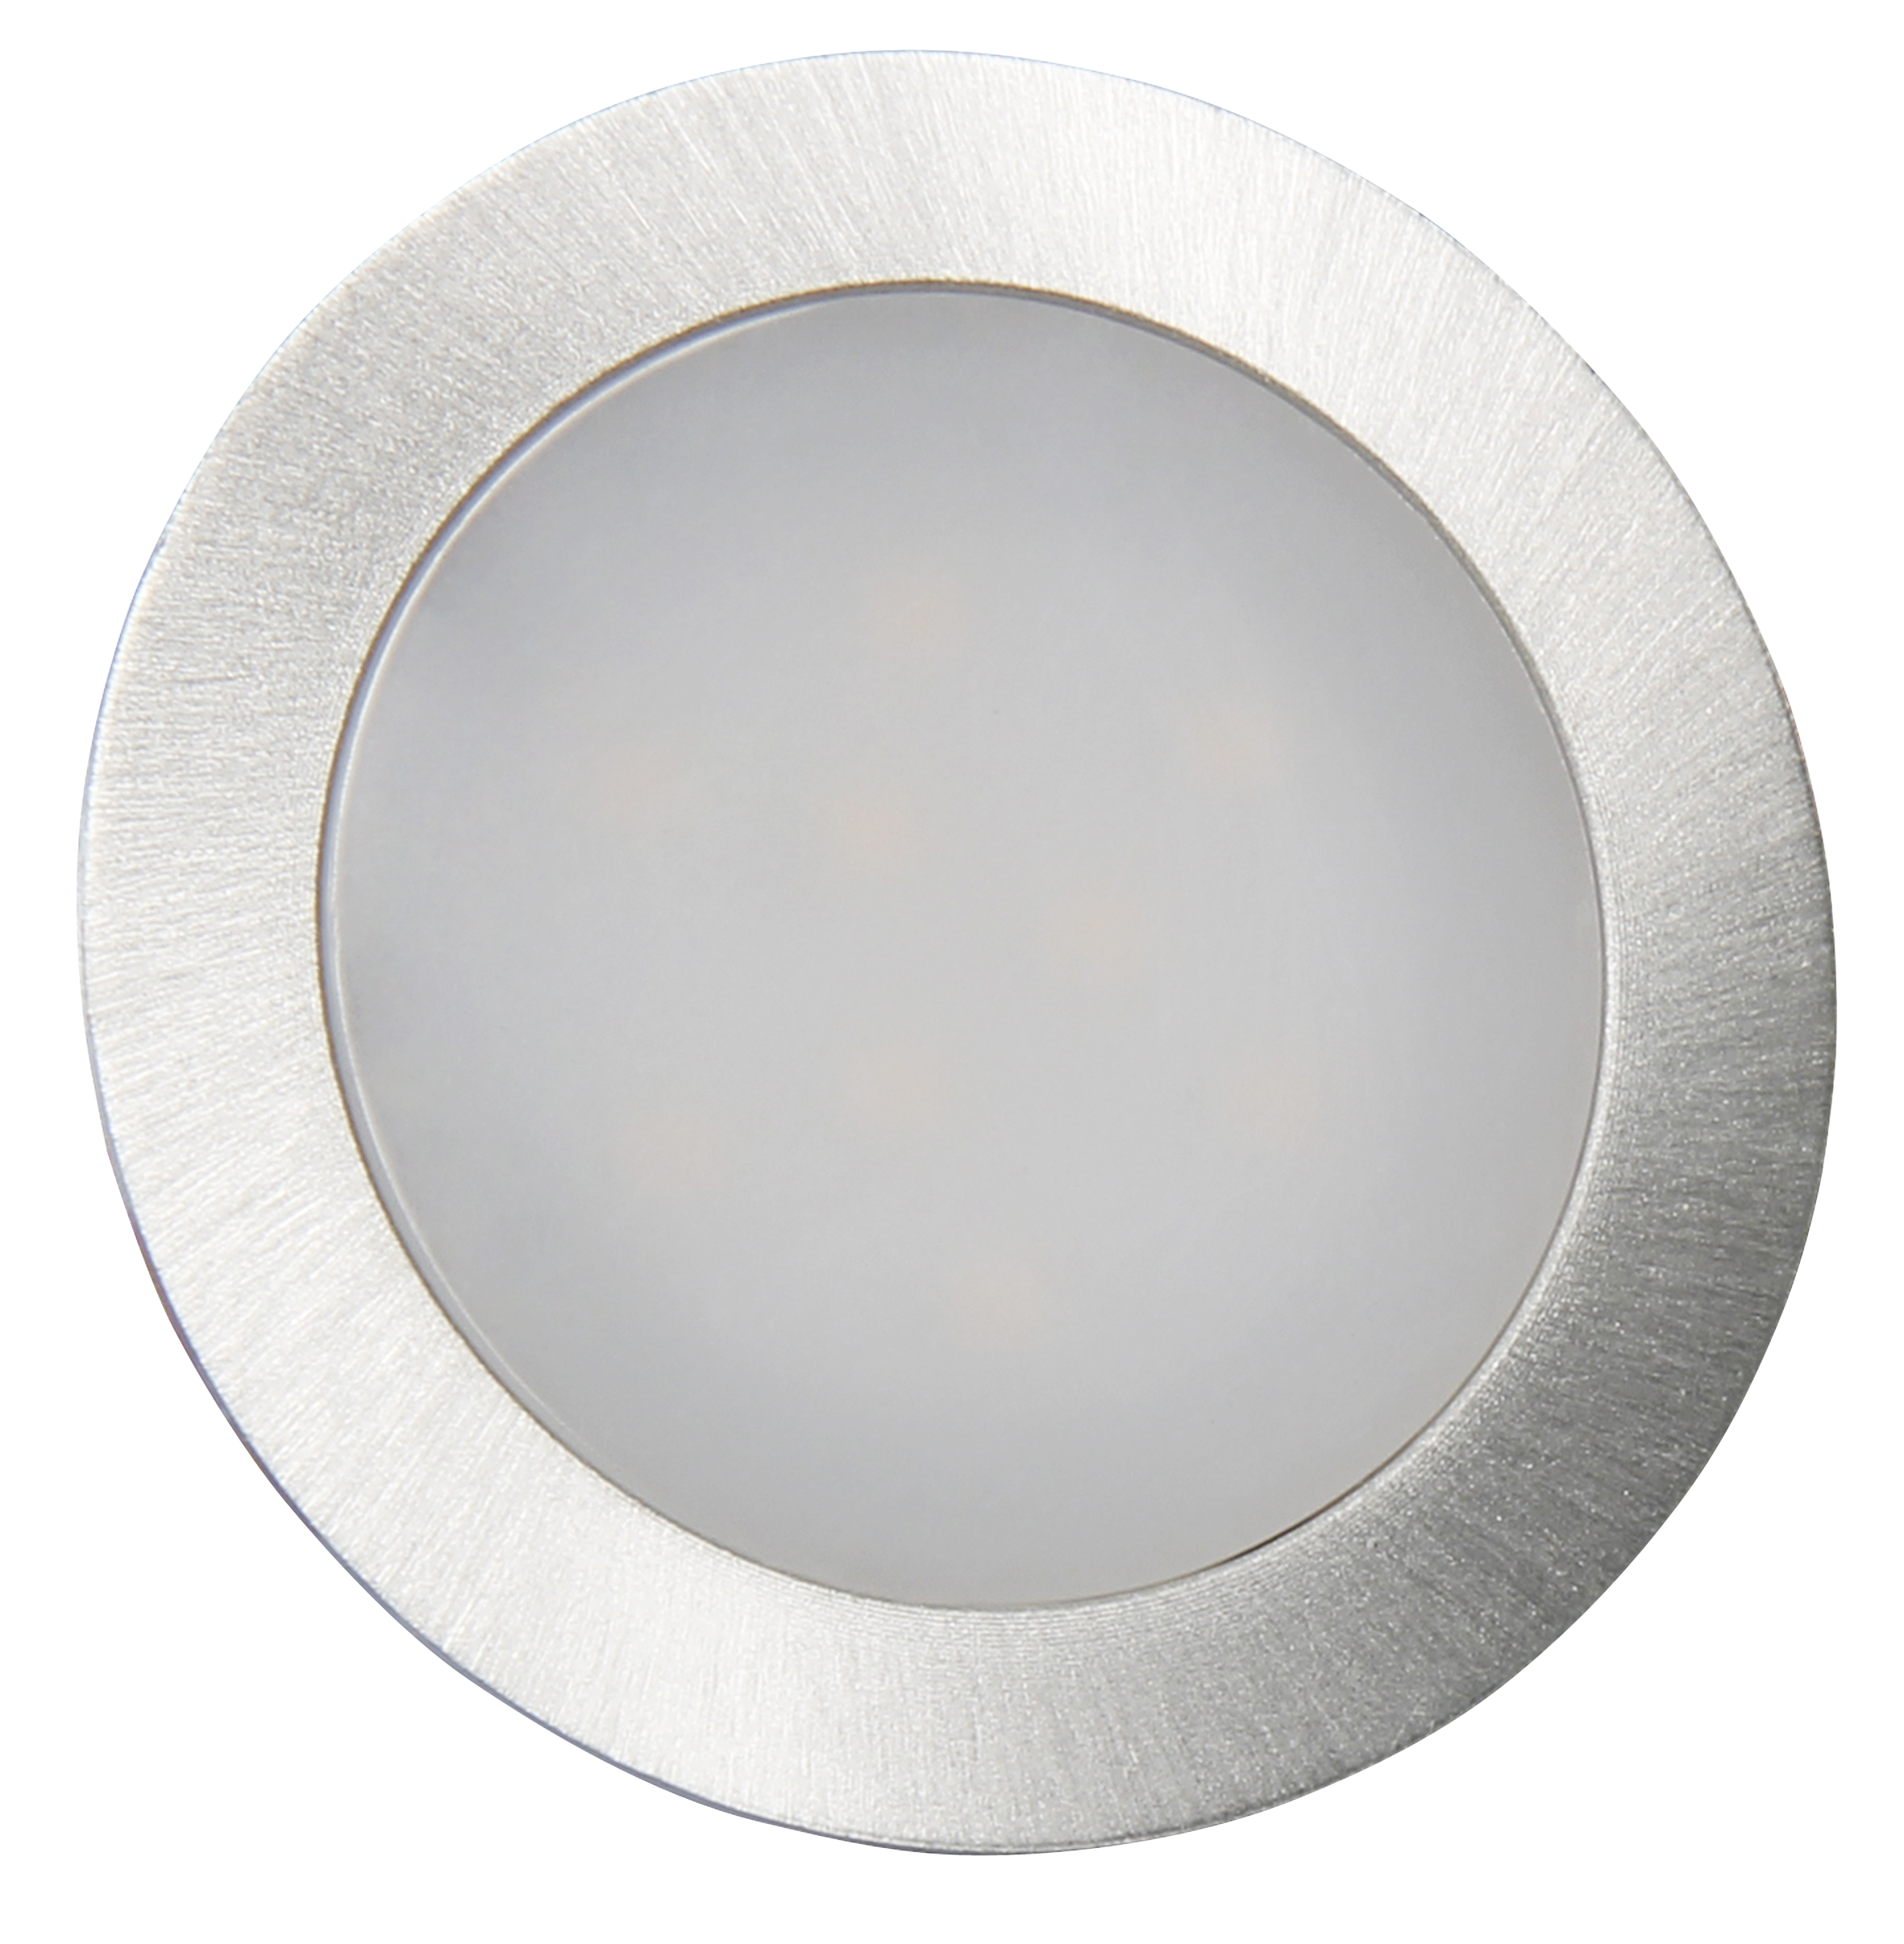 LED-Einbauleuchte McShine ''Fine'', 9 LEDs, weiß, 55mm-Ø, rund, Edelstahl, 60lm, 0.5W